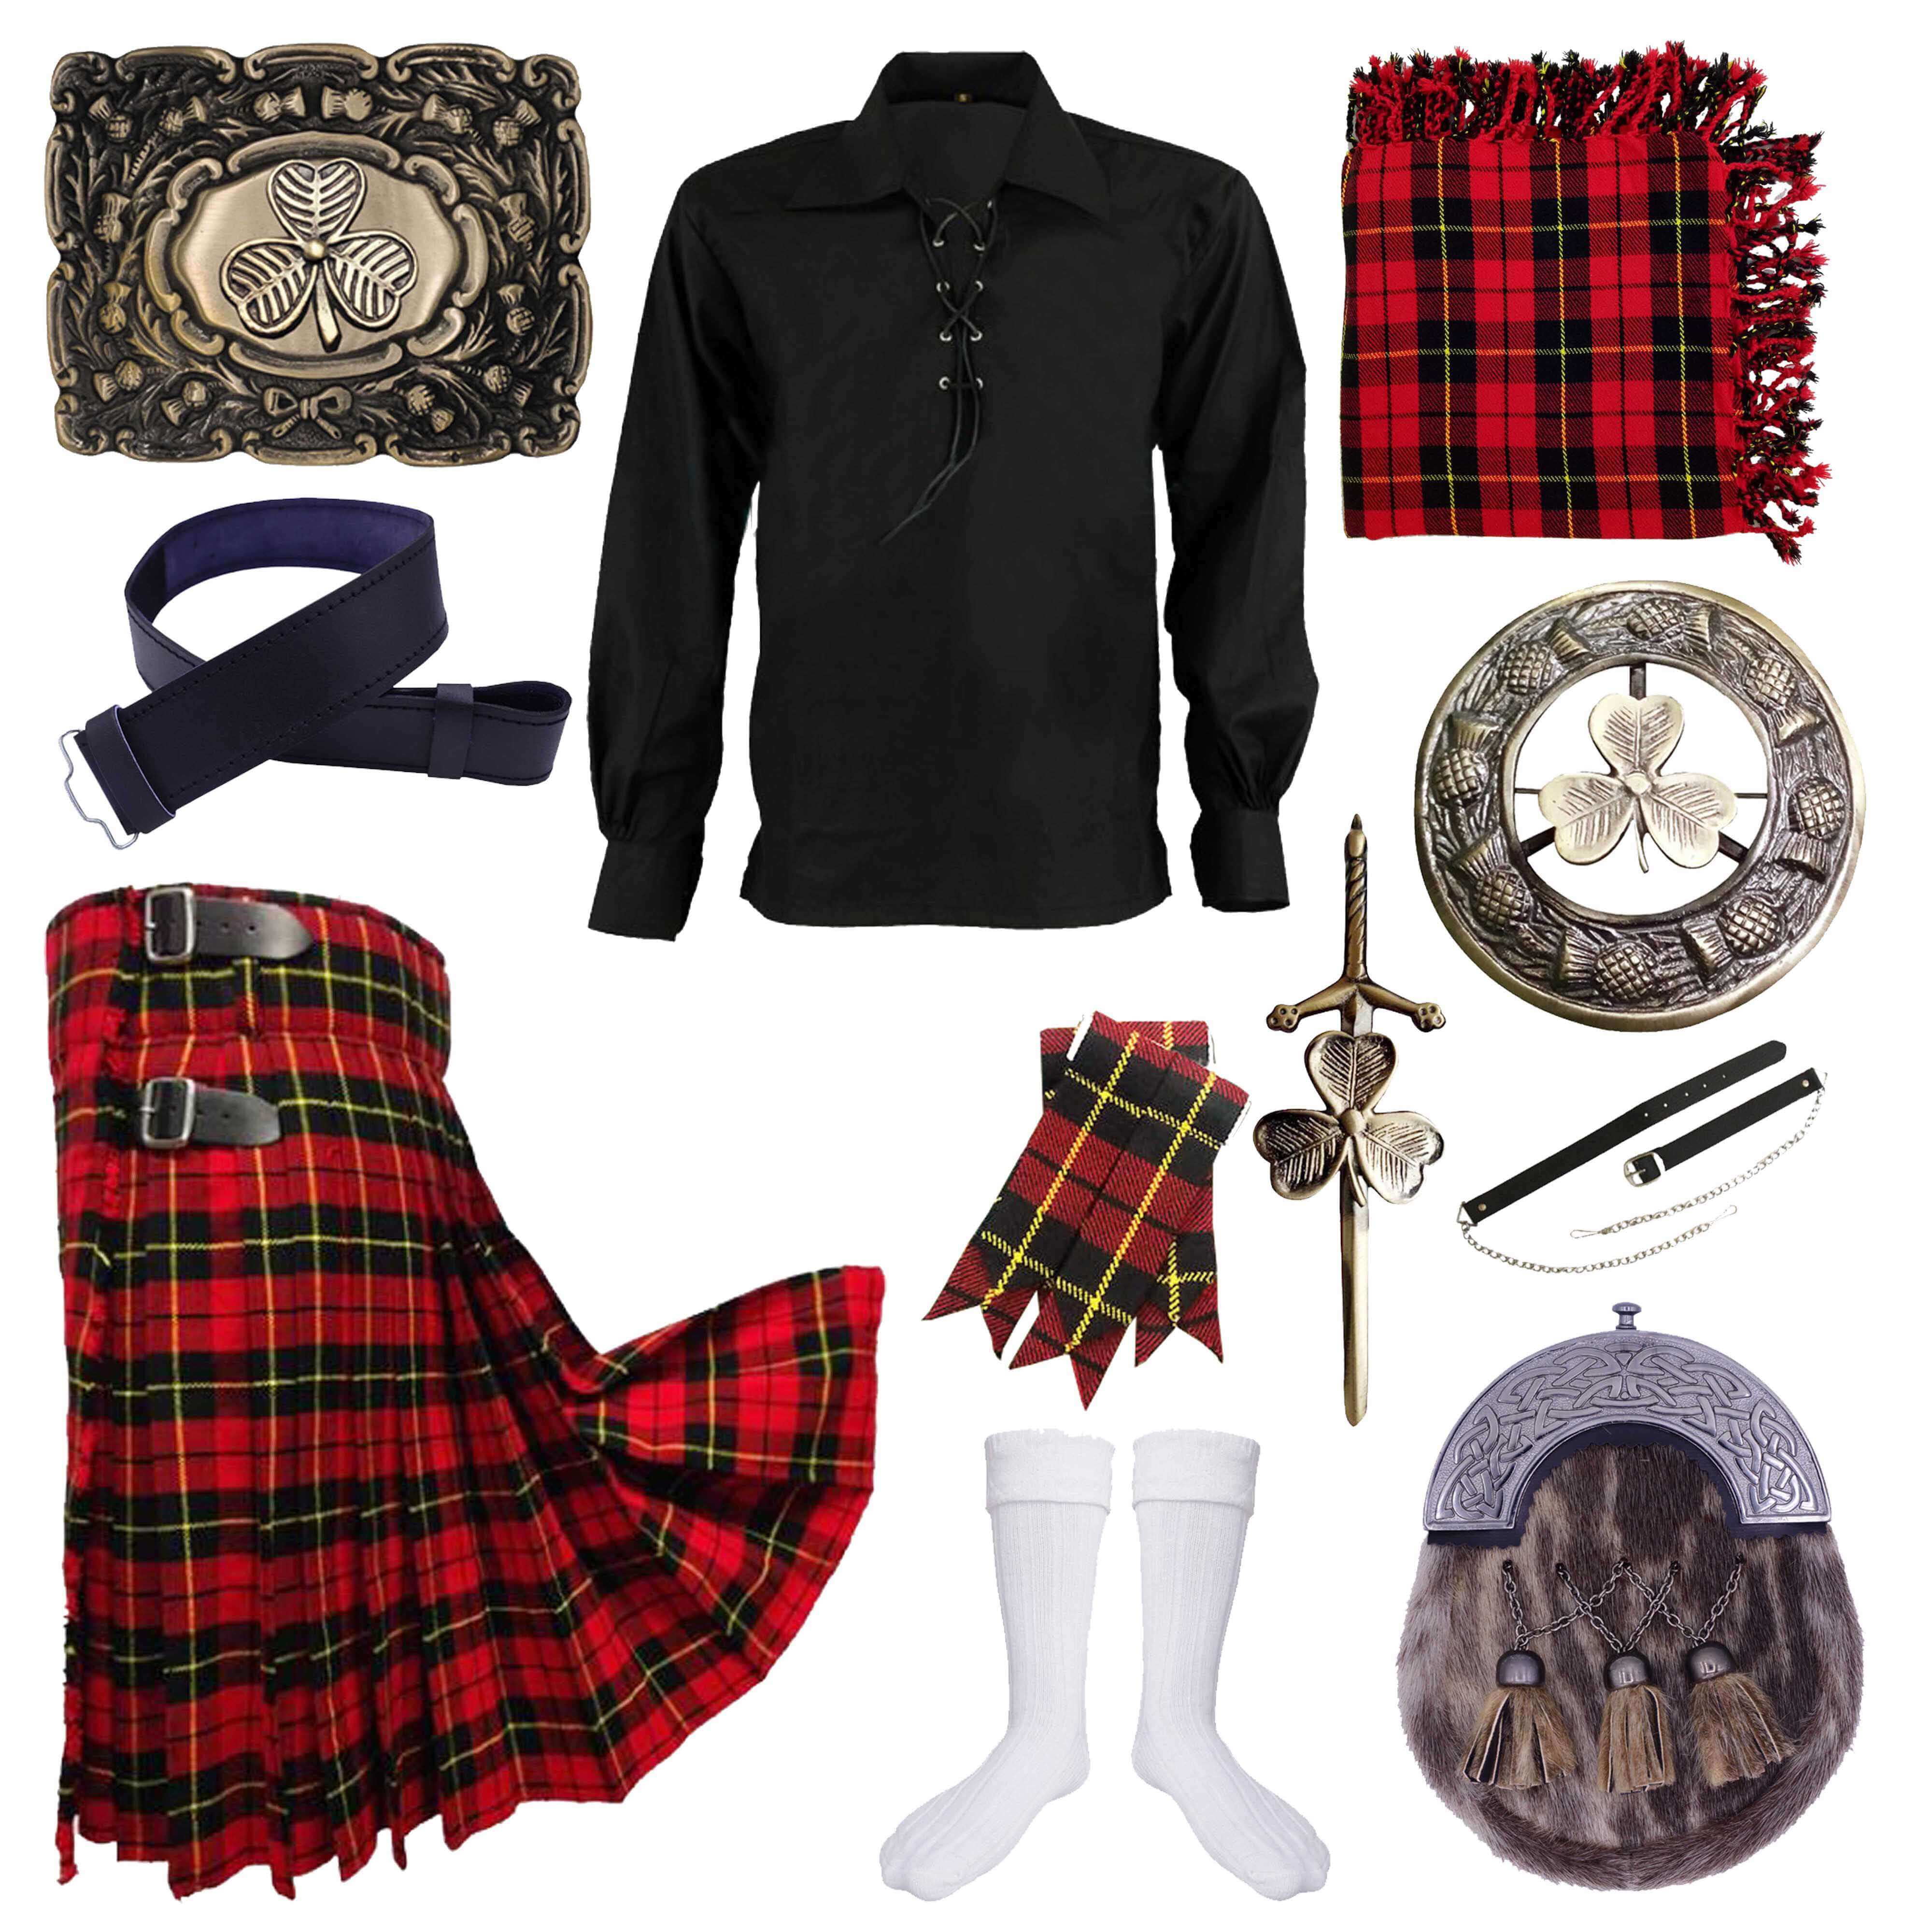 Celtic KILT PIN Scottish Kilts Highland Sporran Kilt Accessory 